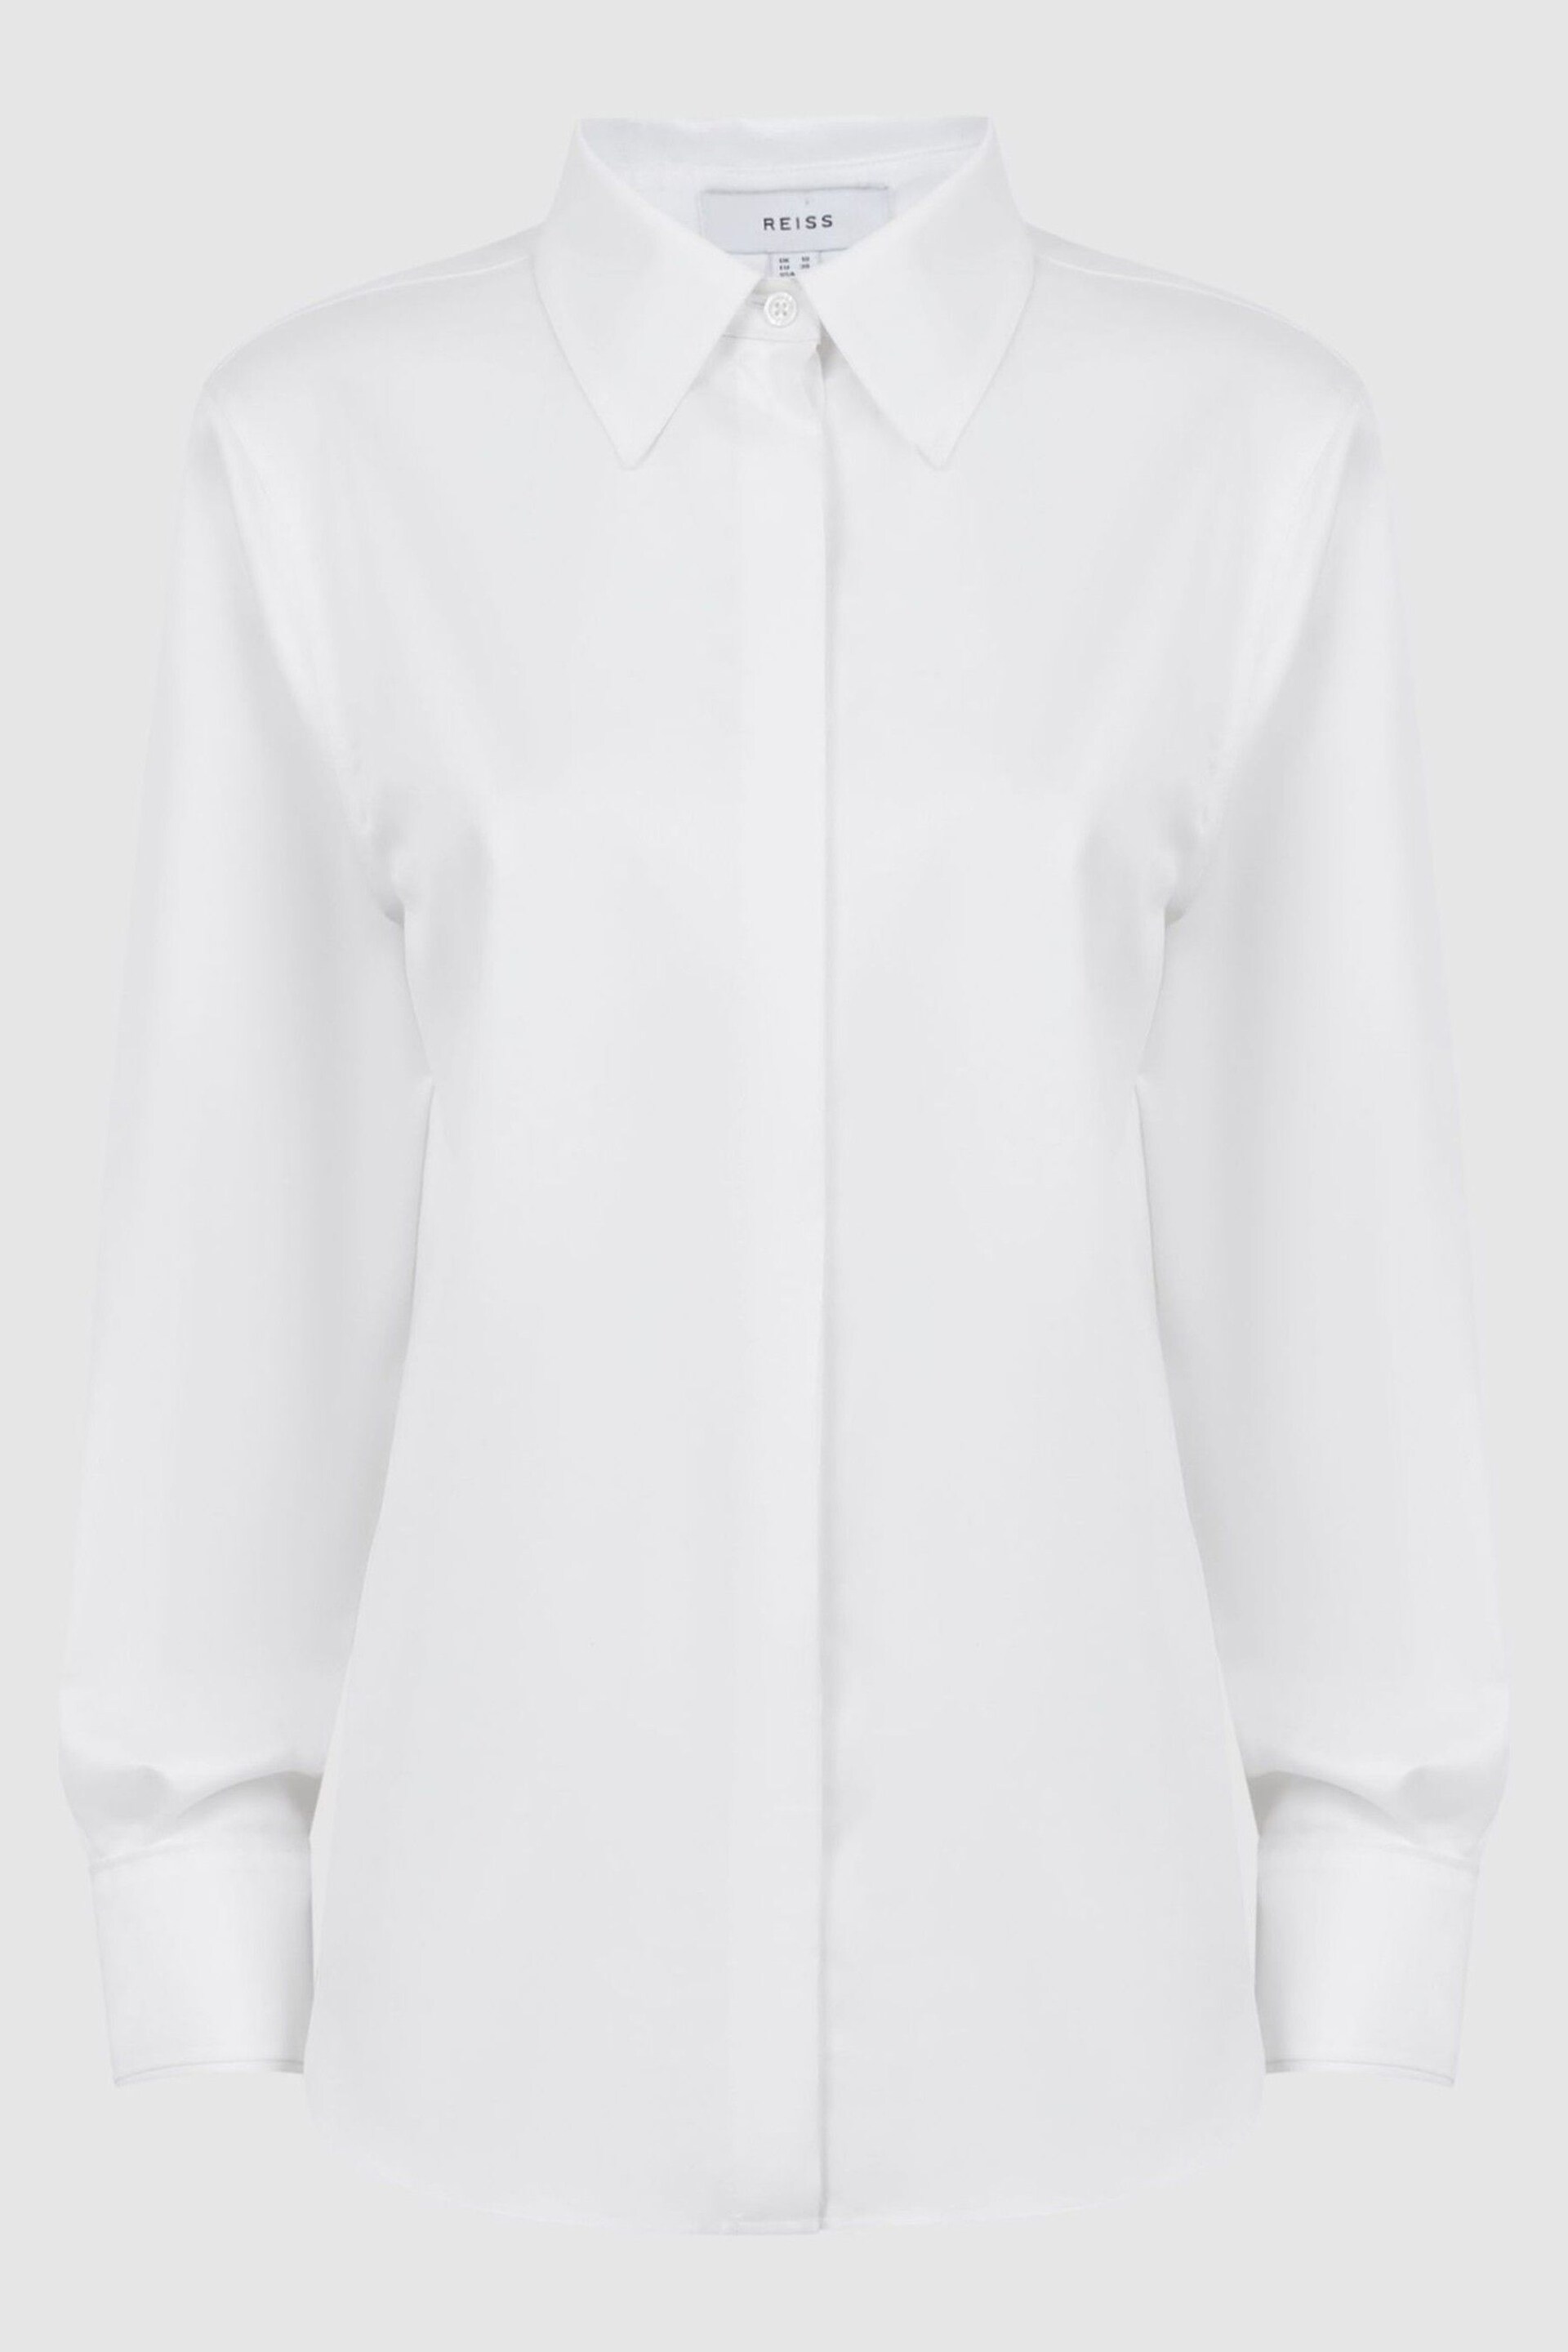 Reiss White Lia Premium Cotton Shirt - Image 2 of 4